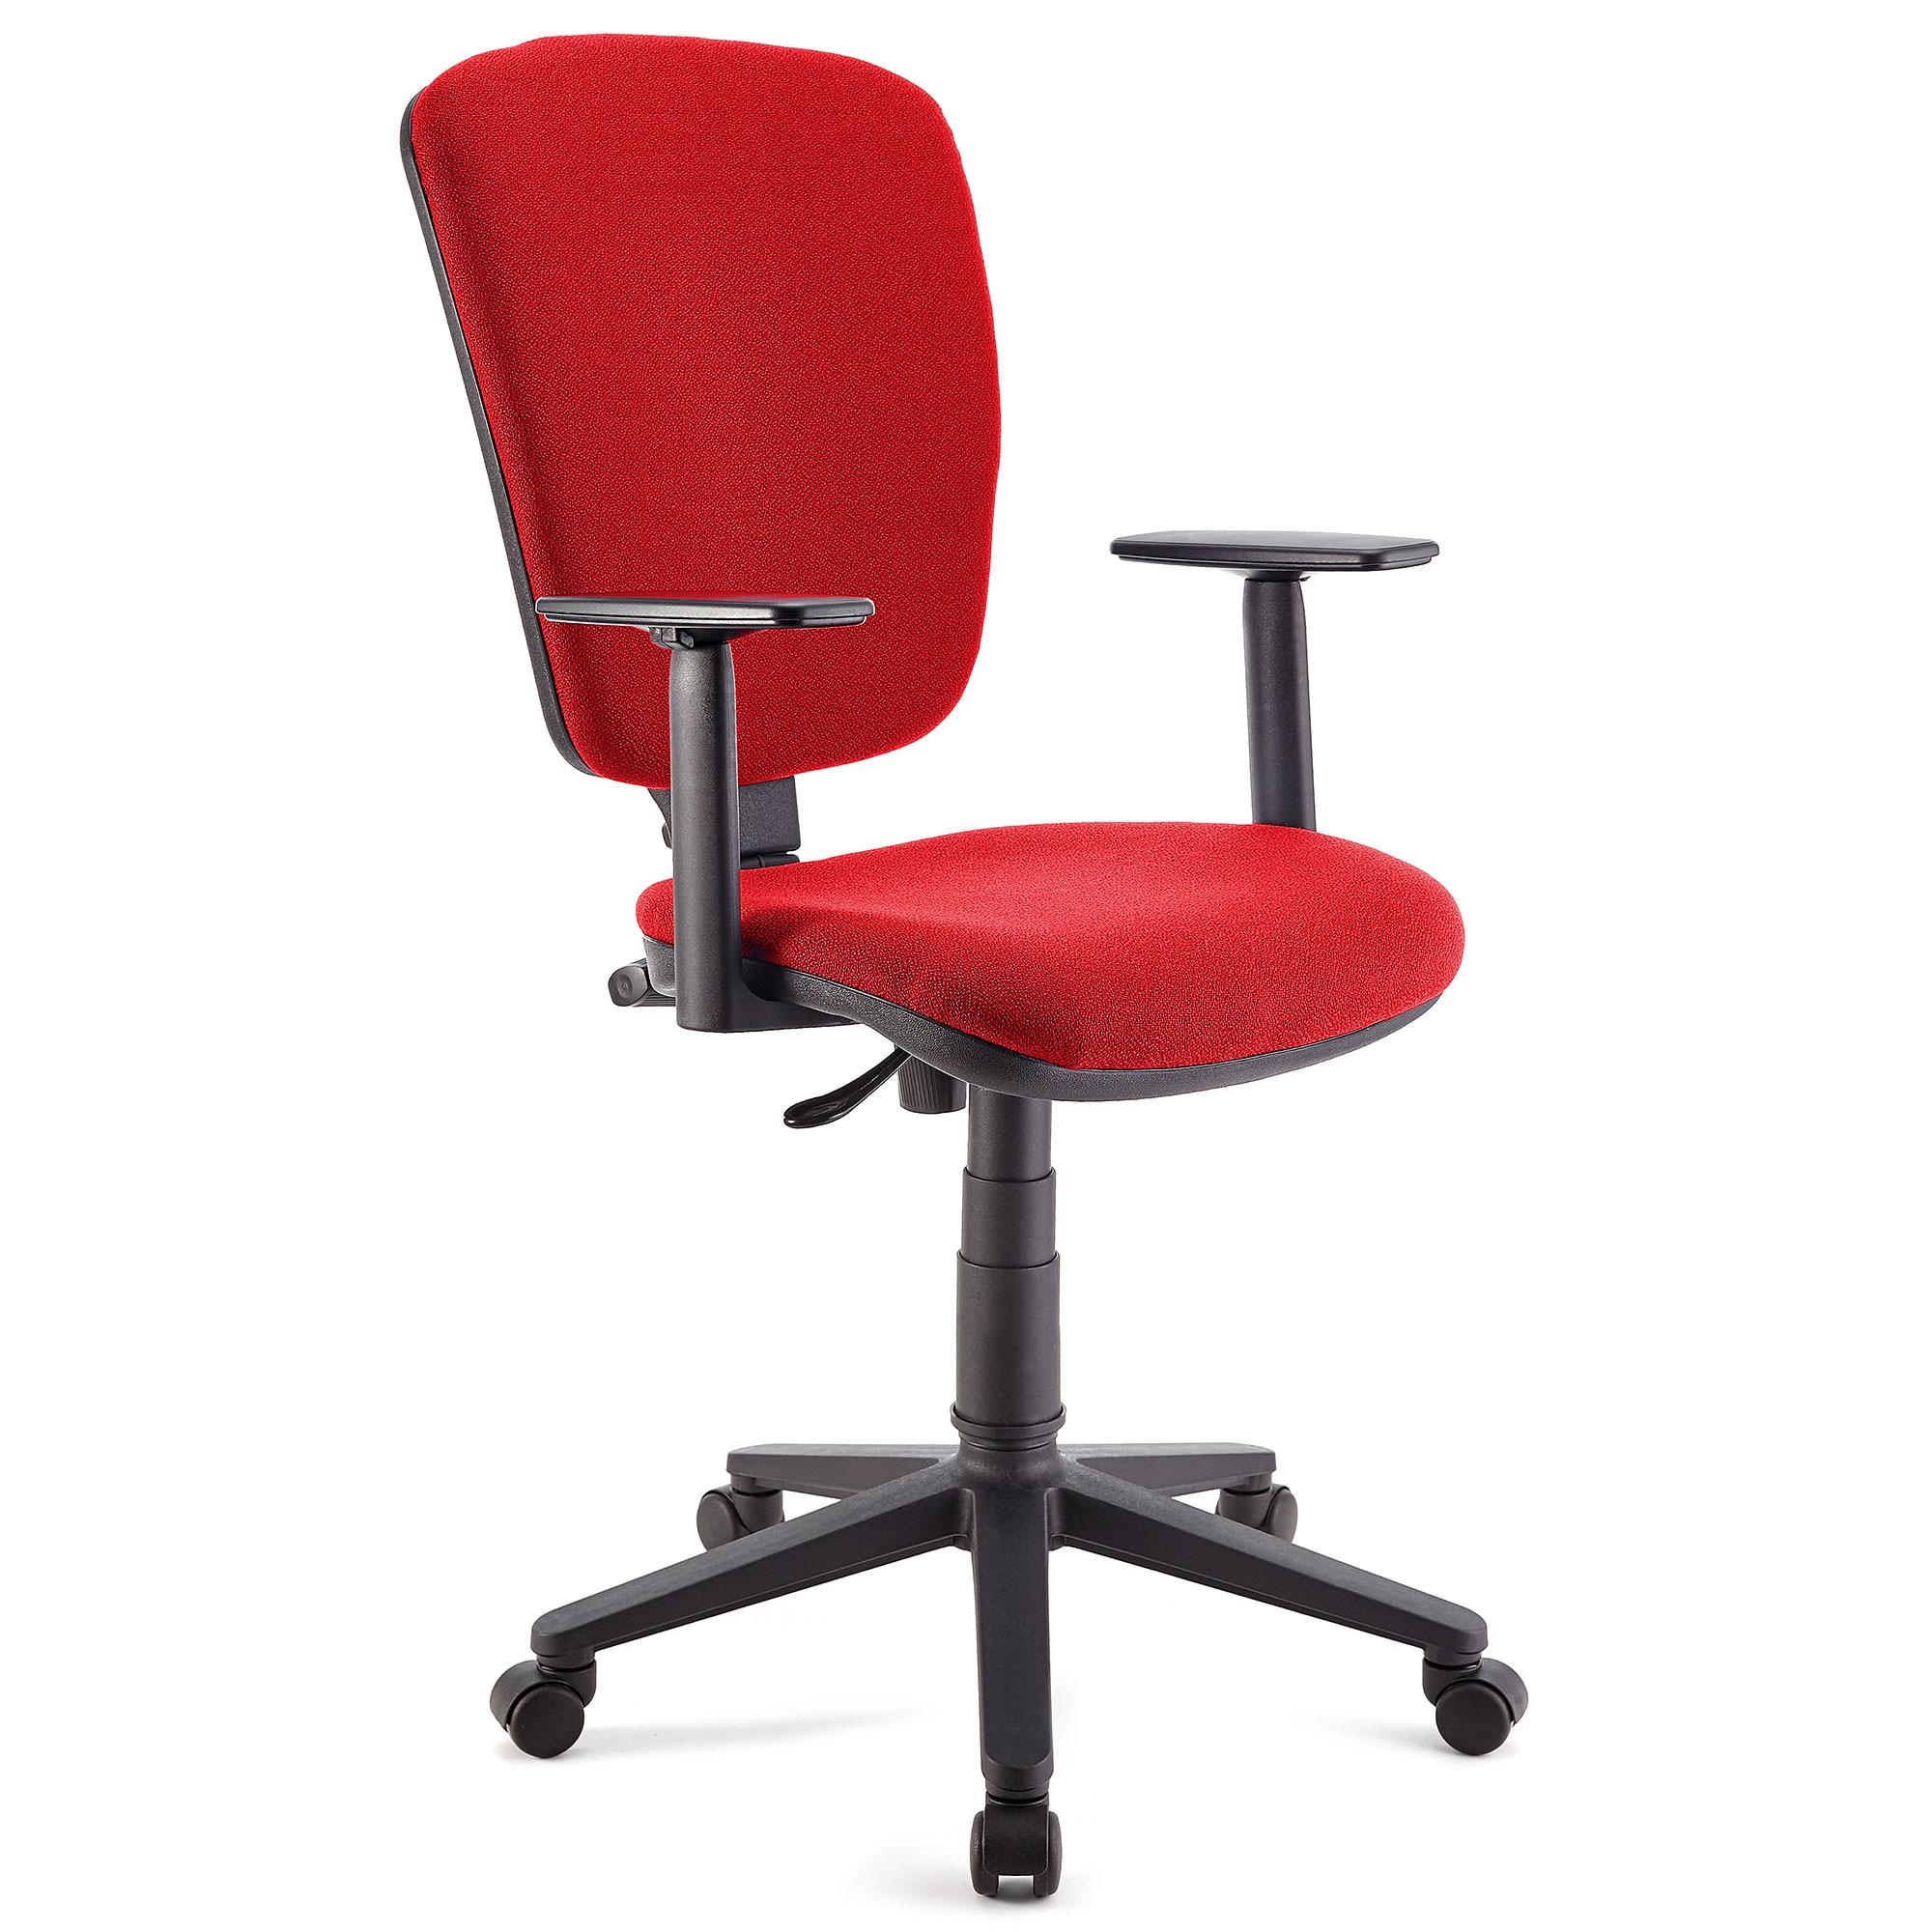 Bürostuhl KALIPSO PLUS, verstellbare Rücken- und Armlehnen, robust, Stoffbezug, Farbe Rot